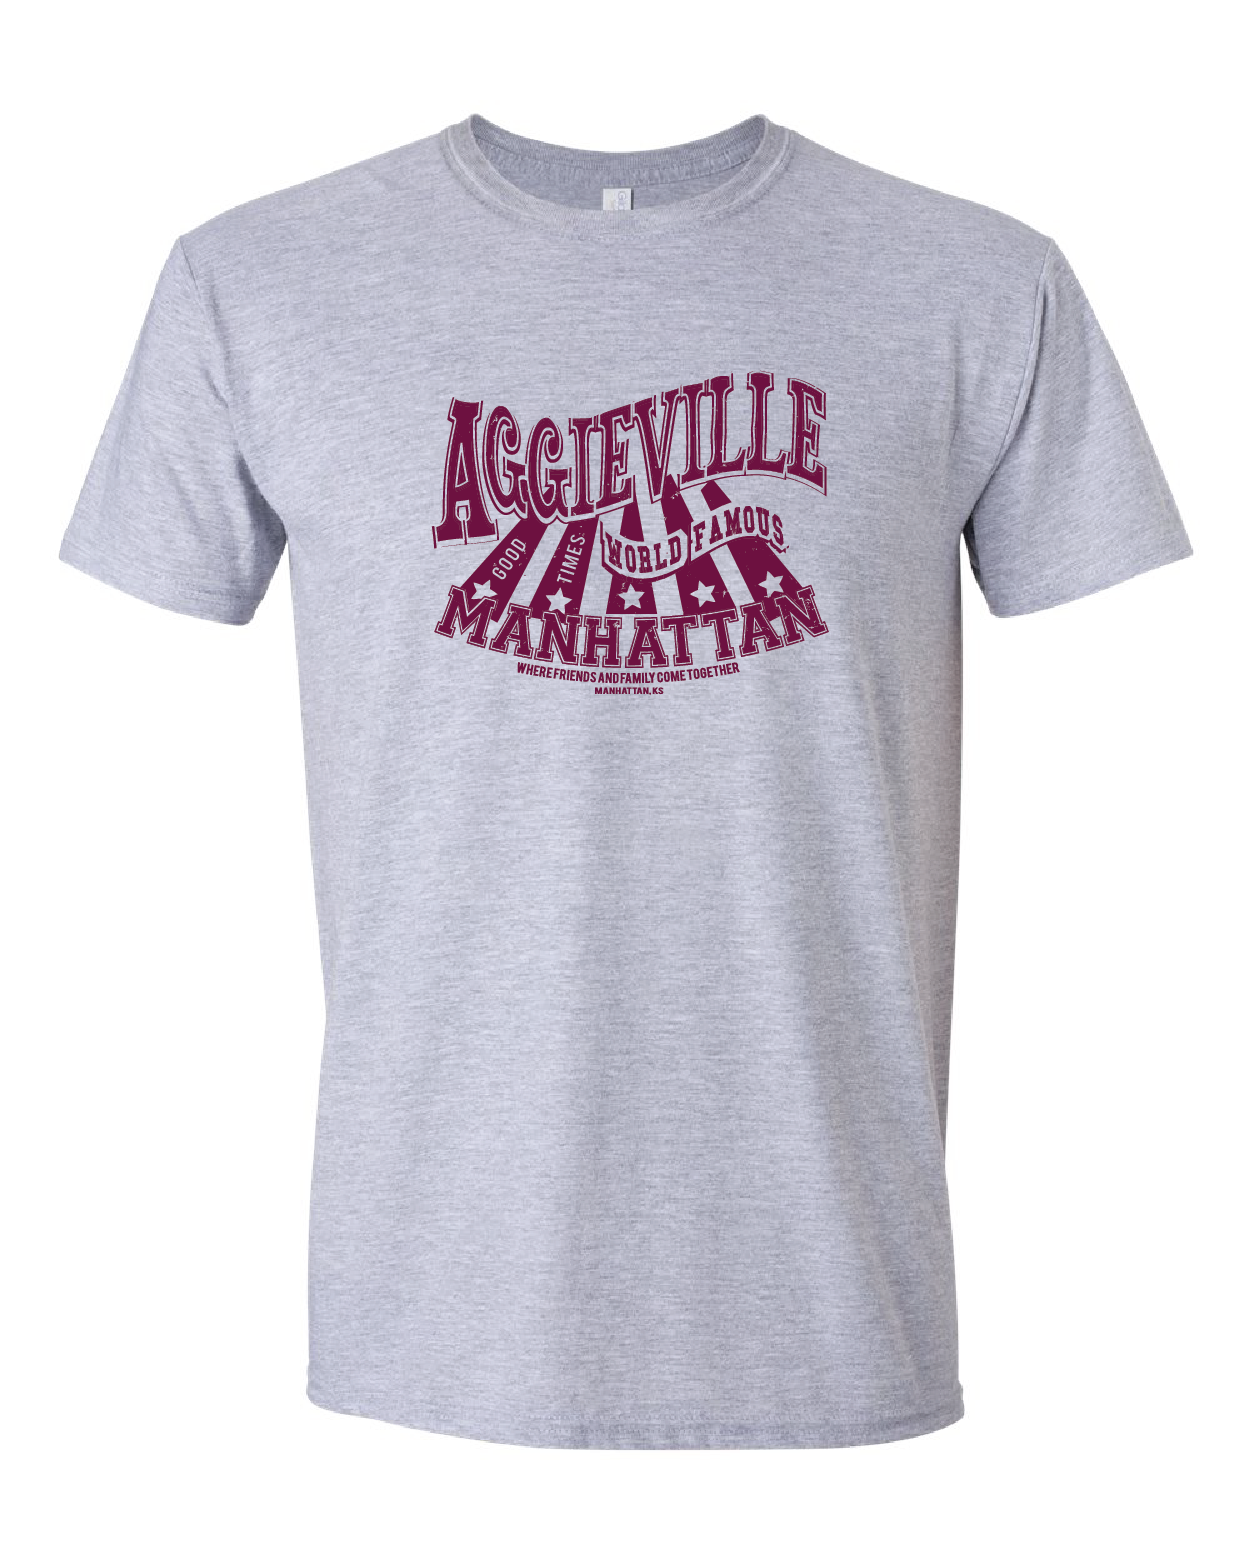 Aggieville, World Famous